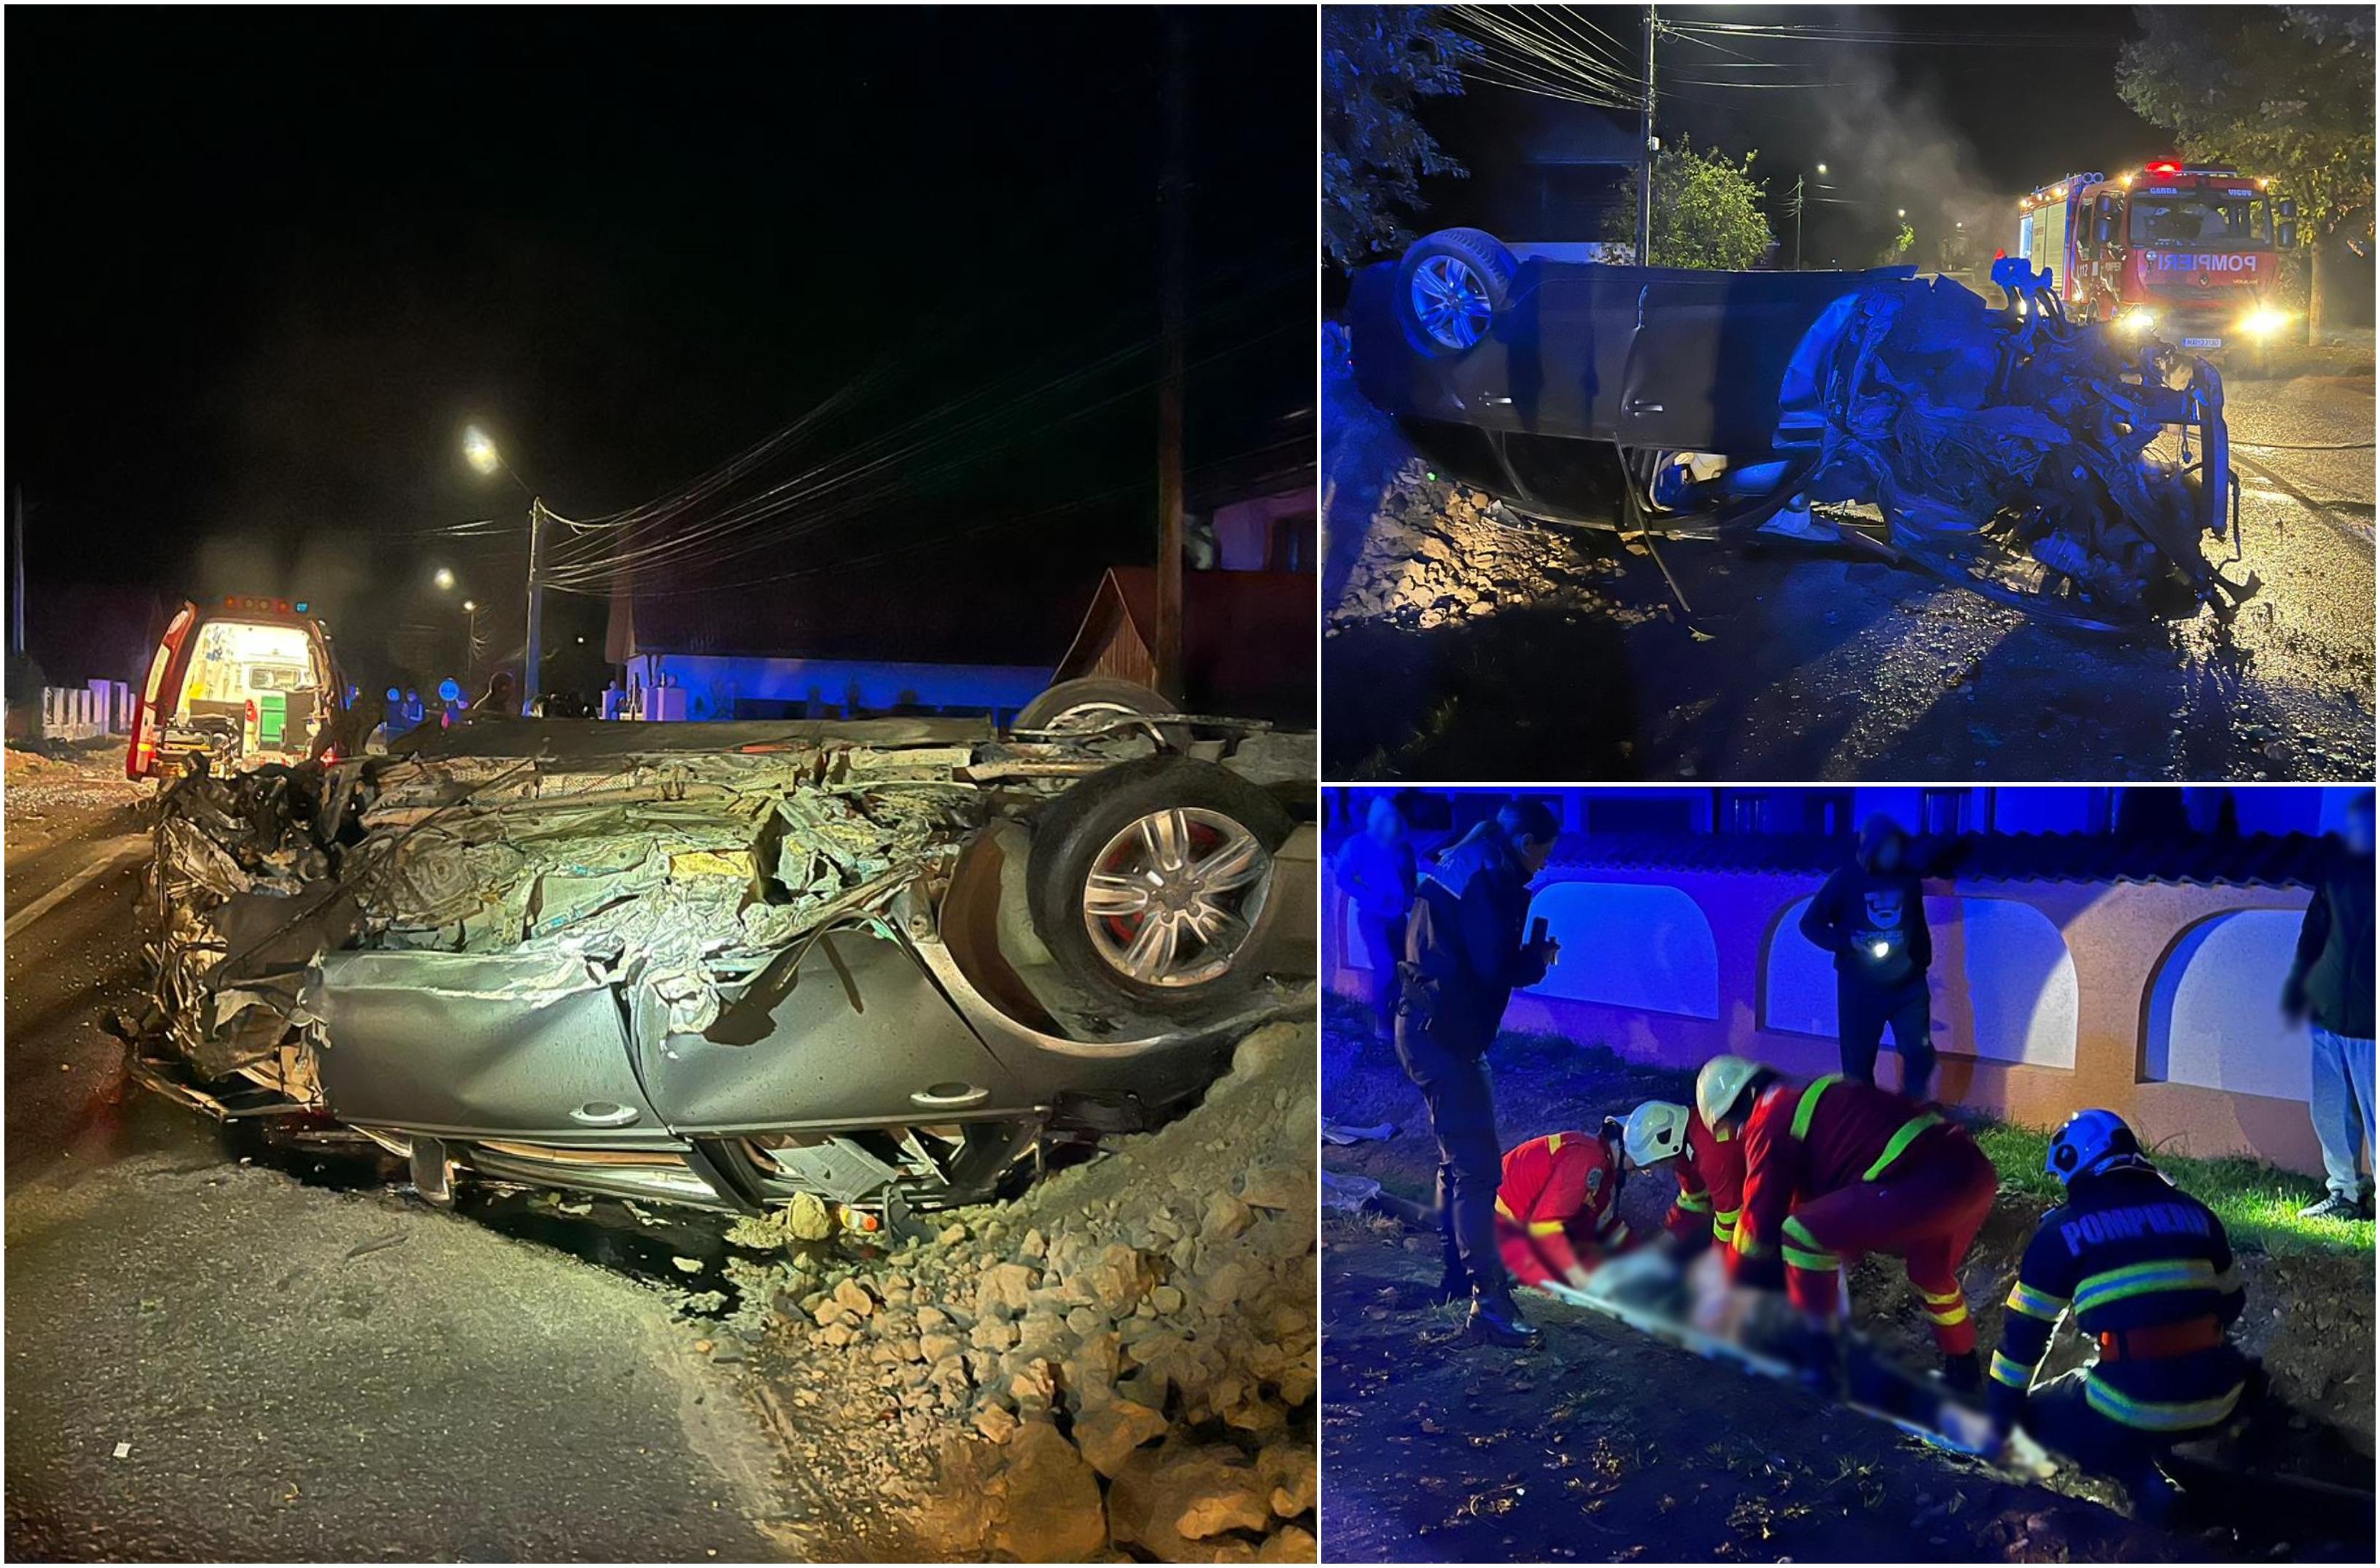 Tânăr de 22 de ani, inconştient după ce a intrat cu viteză într-un copac de pe marginea drumului, în Suceava. Maşina s-a răsturnat şi a luat foc